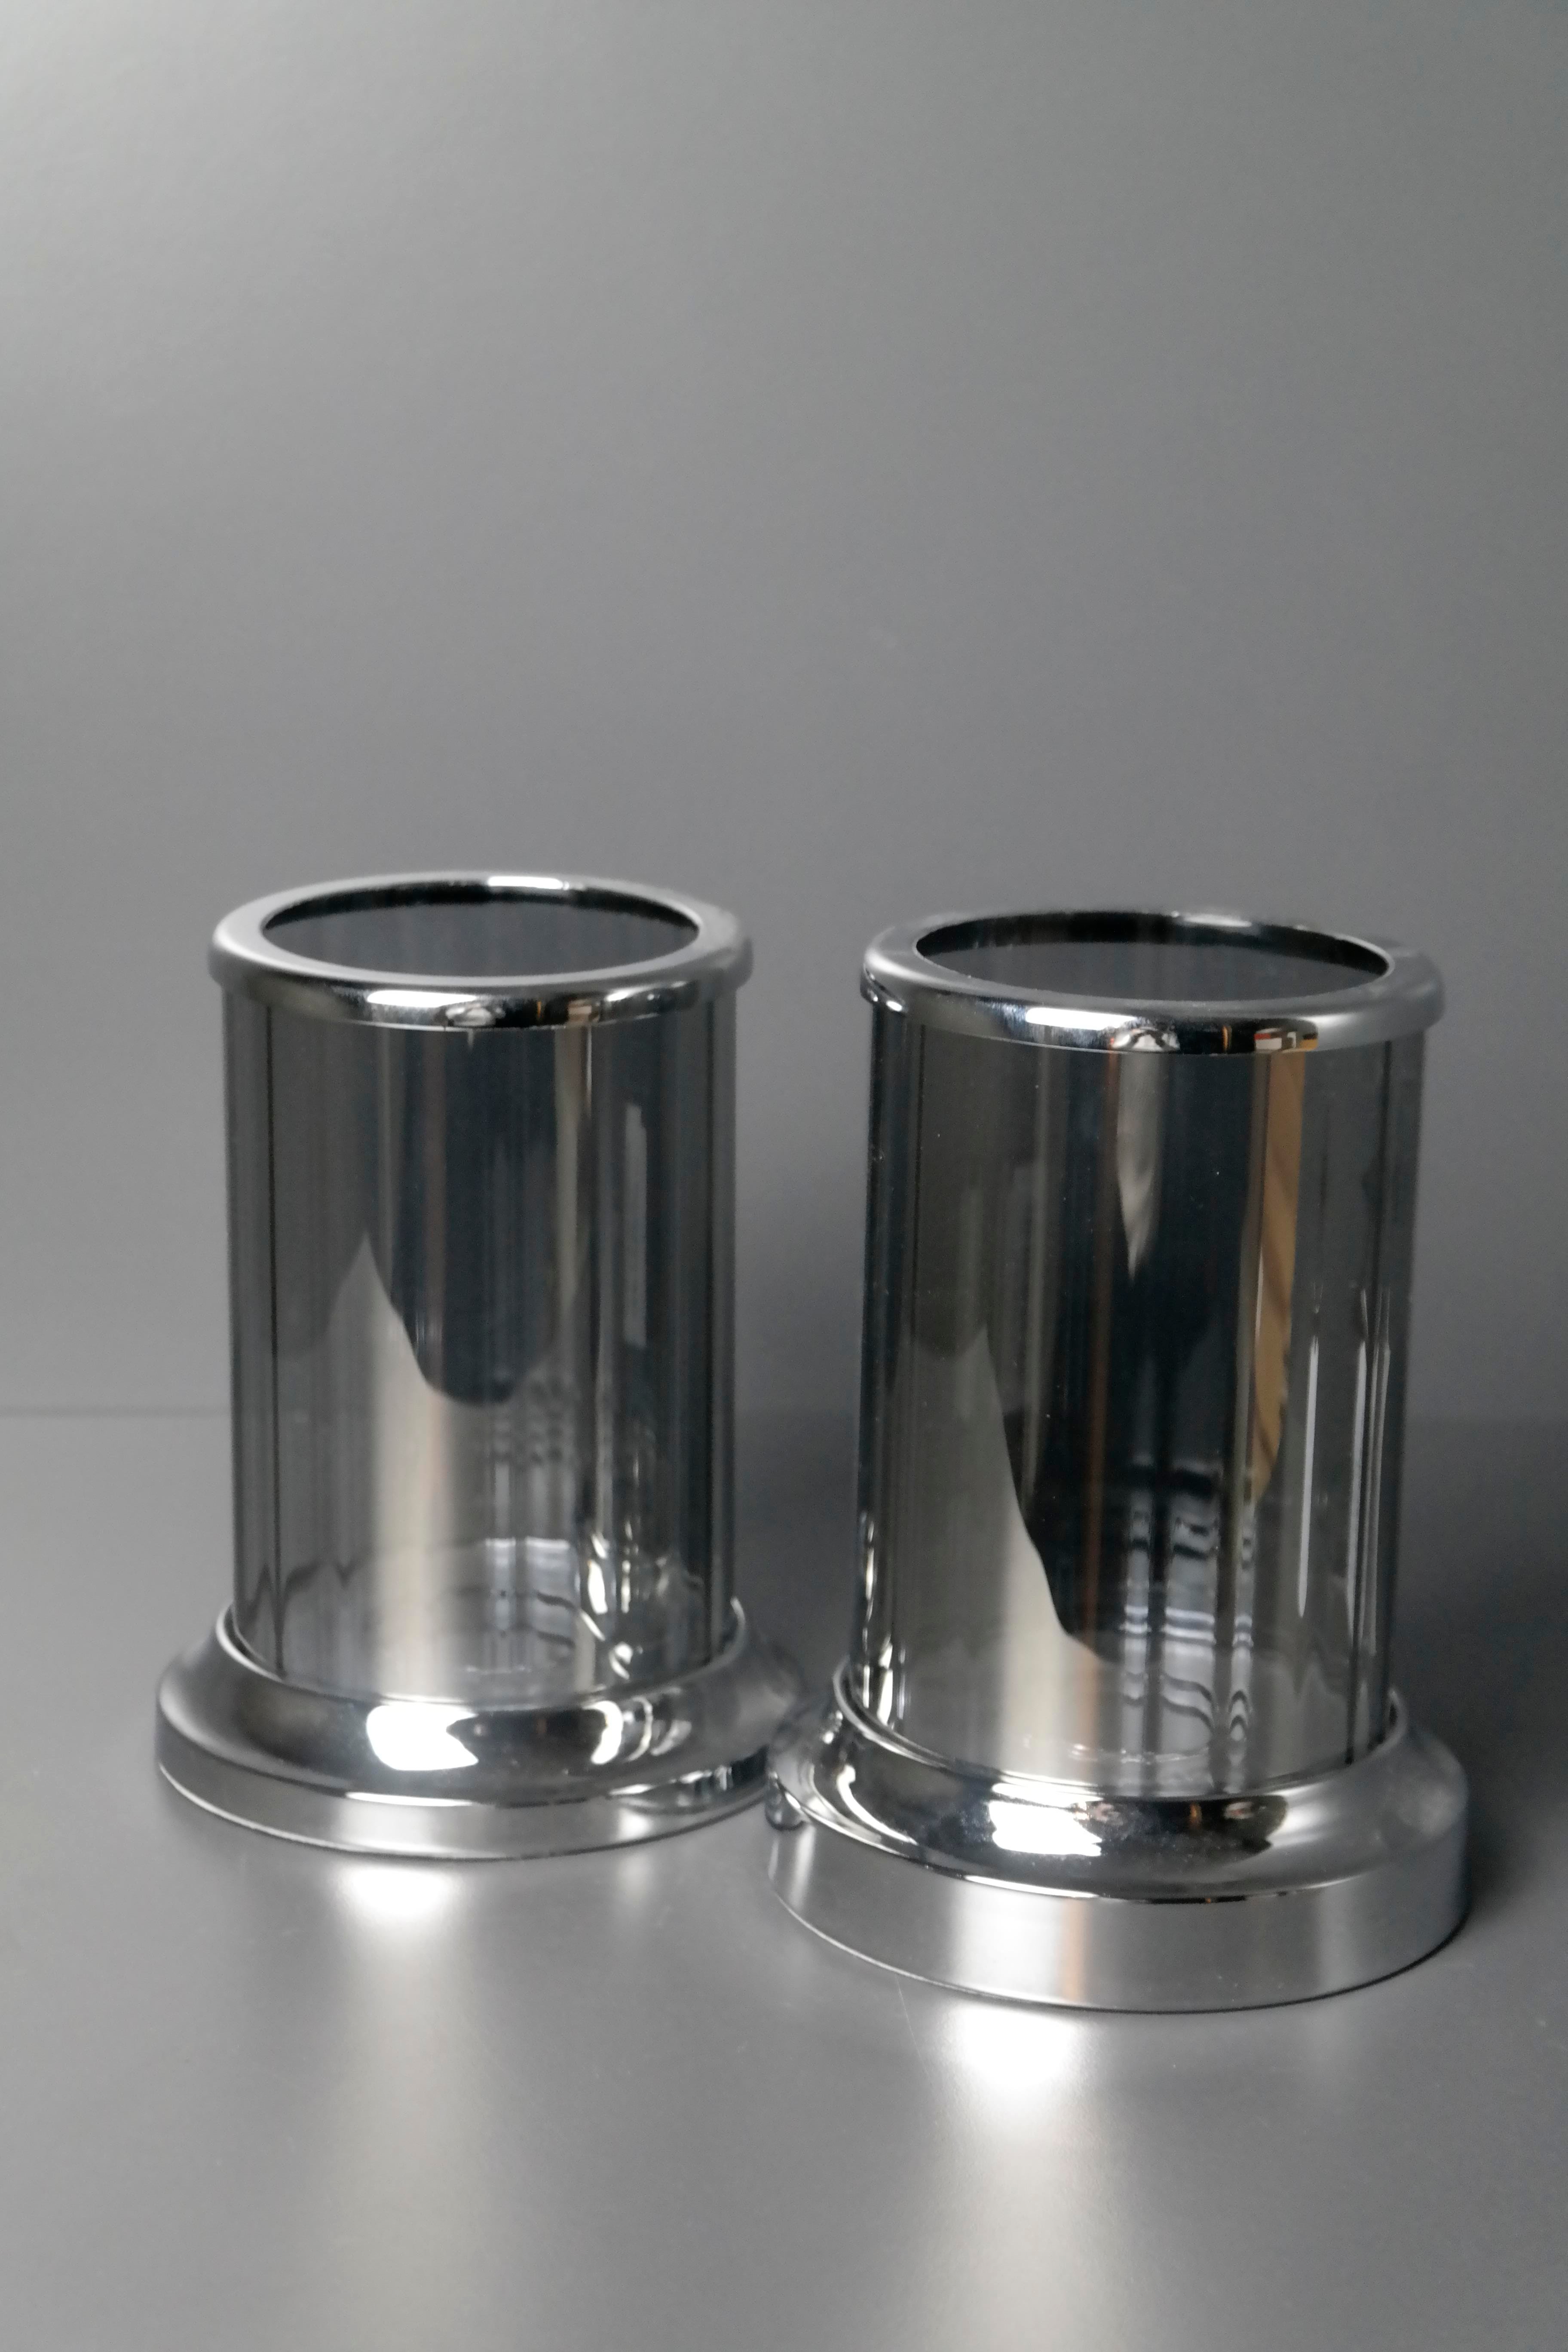 Artelore Gümüş Renk Cam Fanuslu Metal Gövde Mumluk 39 Cmx21 Cm Fiyatları |  Joy Home Accessories